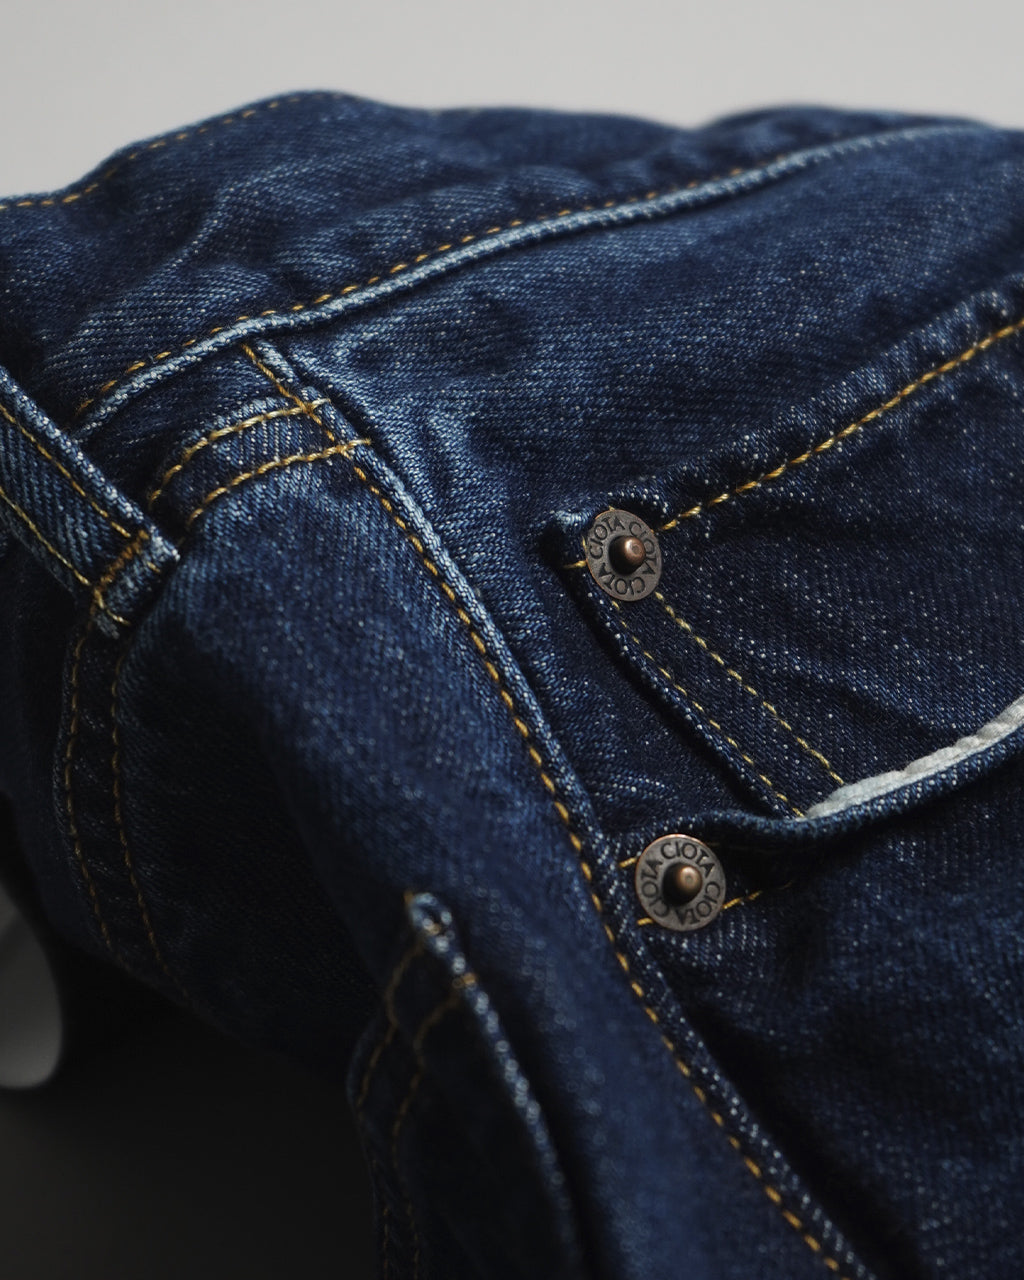 CIOTA シオタ デニム ストレート 5ポケット パンツ Straight 5 Pocket Pants ブラック 本藍 ブルー ネイビー ダメージ PTLM-21STB 【送料無料】 正規取扱店